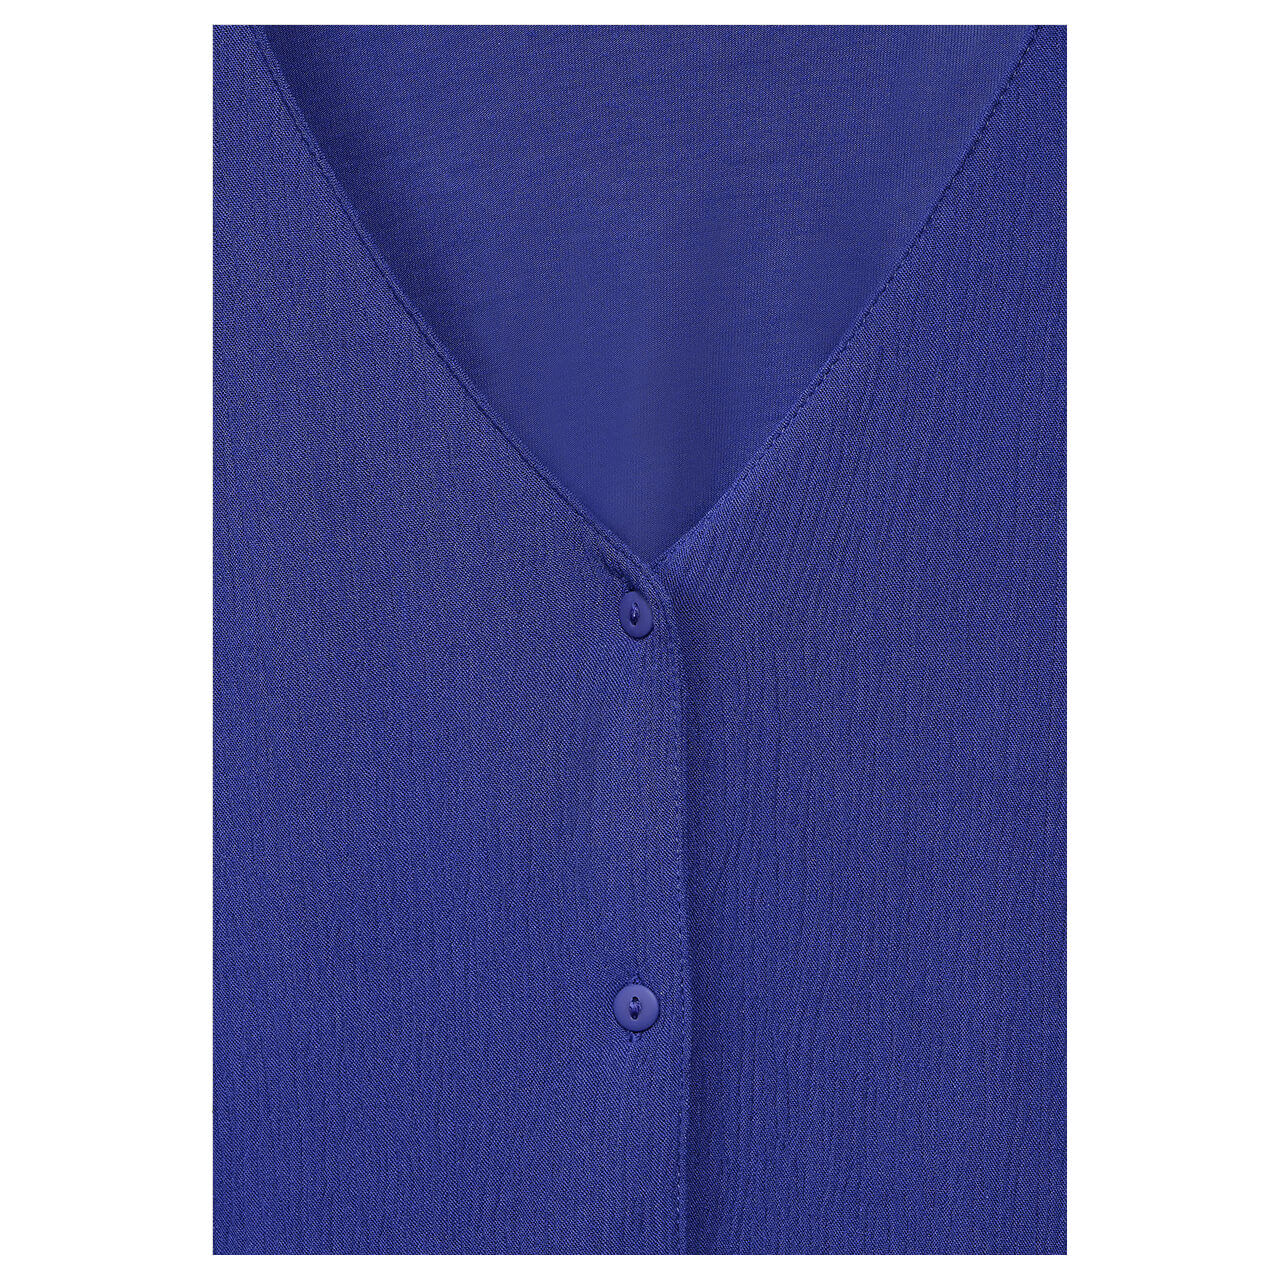 Street One Damen 3/4 Arm Shirt Mat-Mix intense royal blue